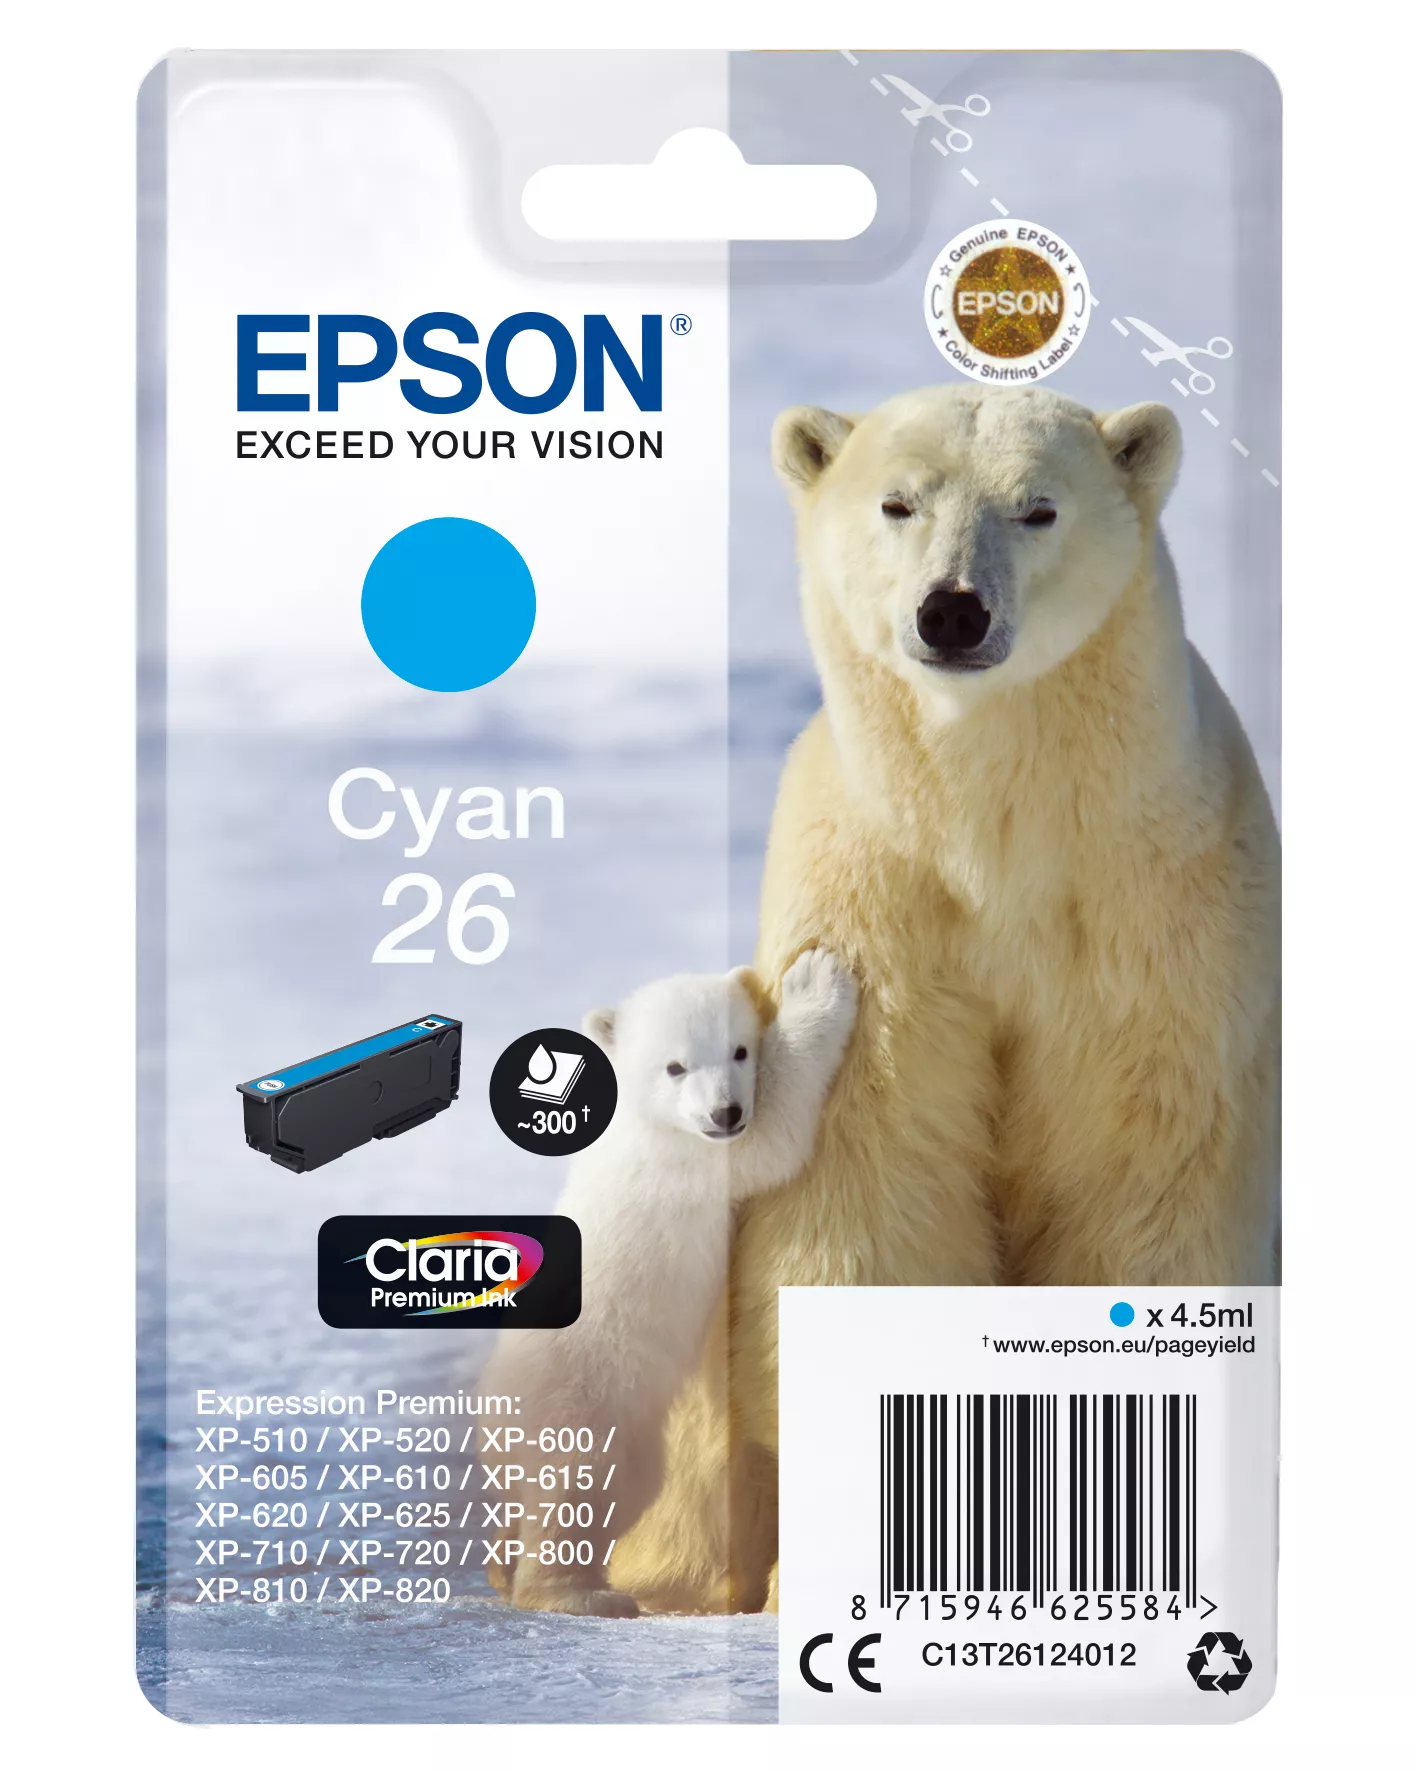 Achat EPSON 26 cartouche encre cyan capacité standard 4.5ml 300 au meilleur prix